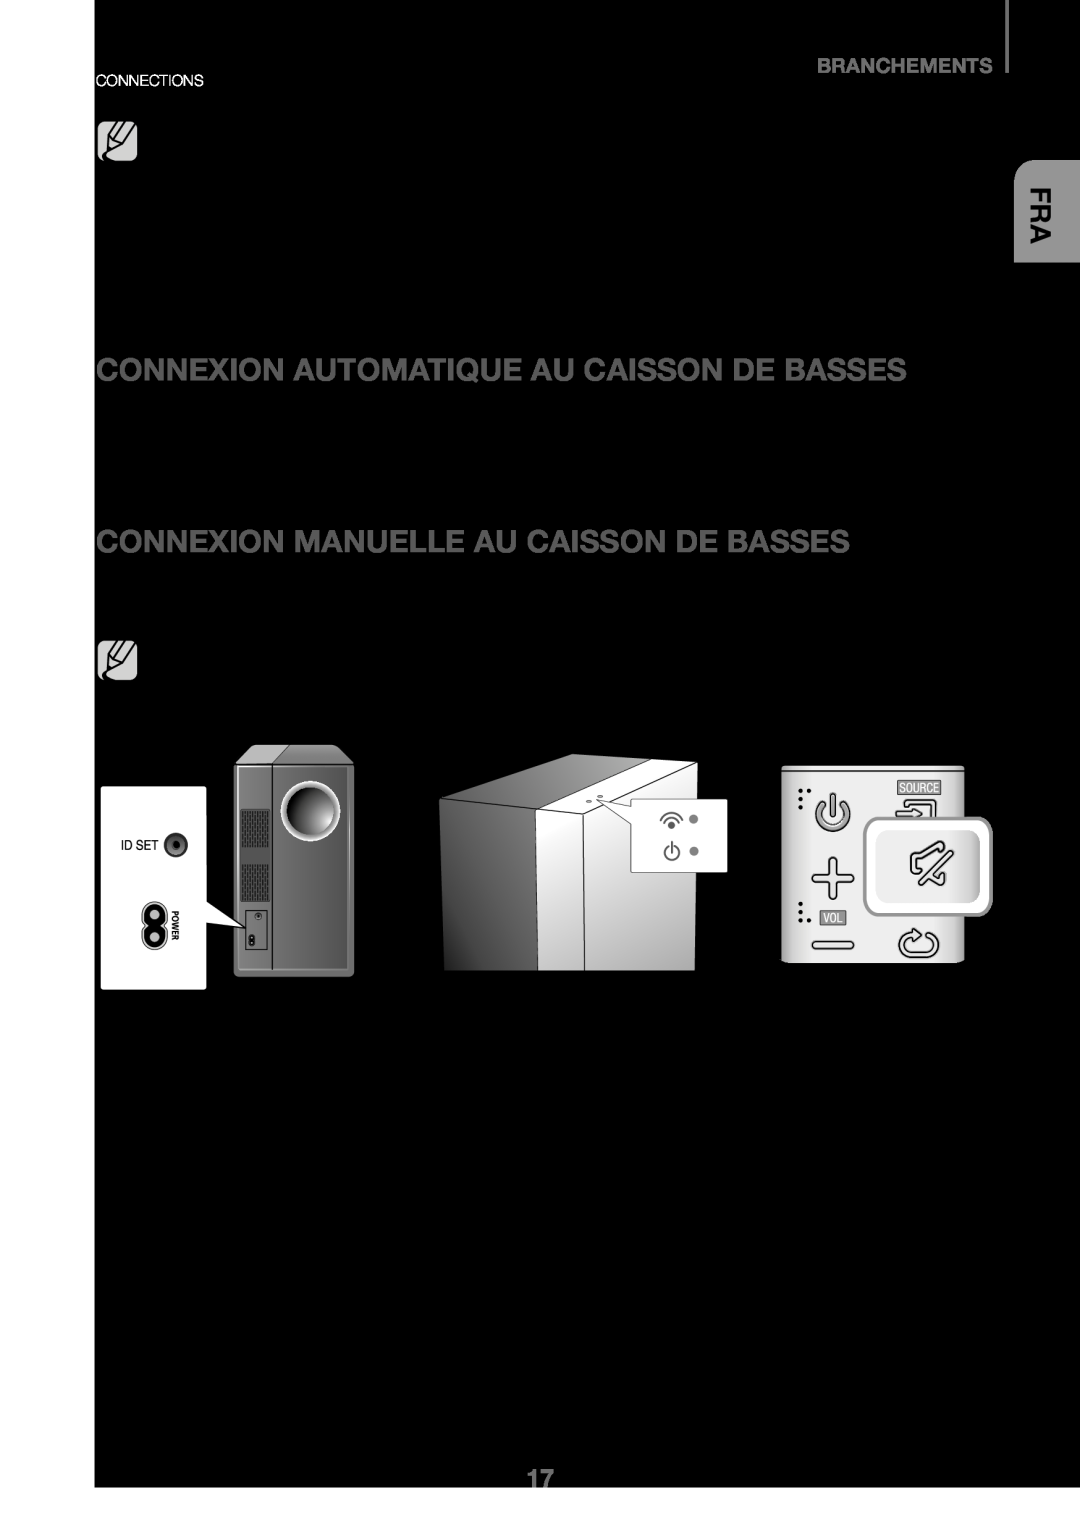 Samsung HW-K450/EN, HW-J450/EN Connexion Du Caisson De Basses, Connexion Automatique Au Caisson De Basses, Branchements 